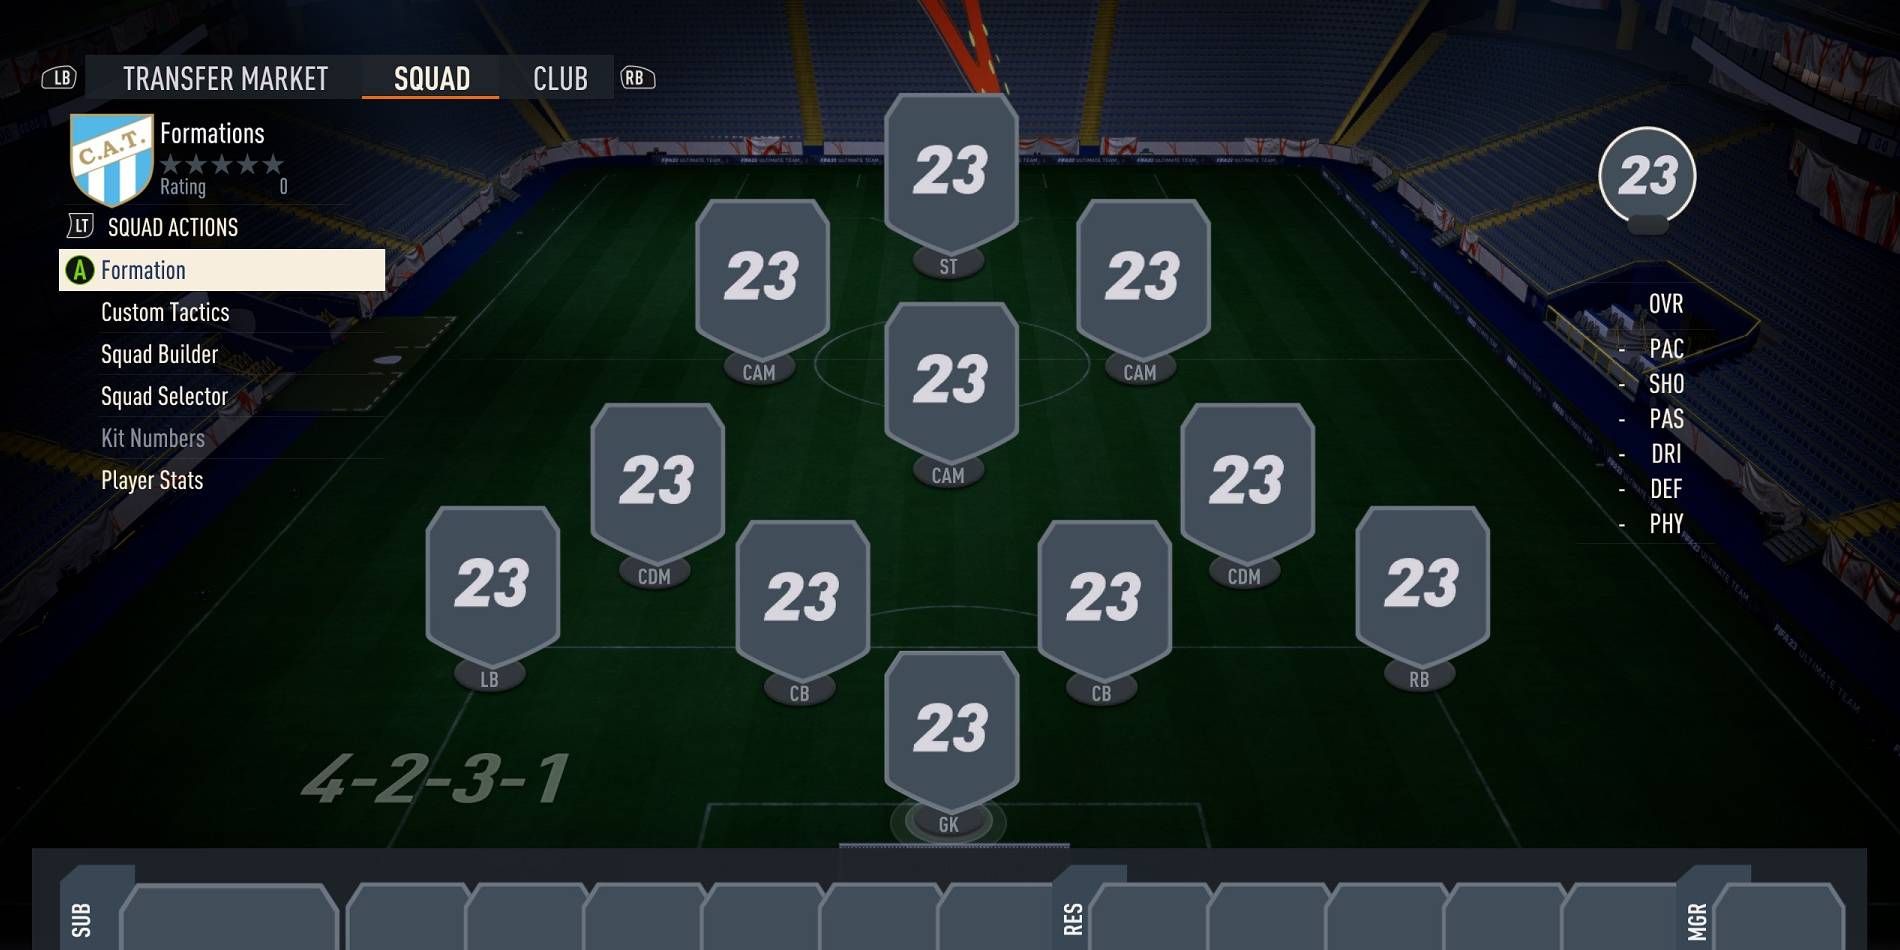 Seleção de formação de FIFA 23 Pro Clubs com 11 vagas para organizar em todo o elenco de jogadores, atualmente em 4-2-3-1